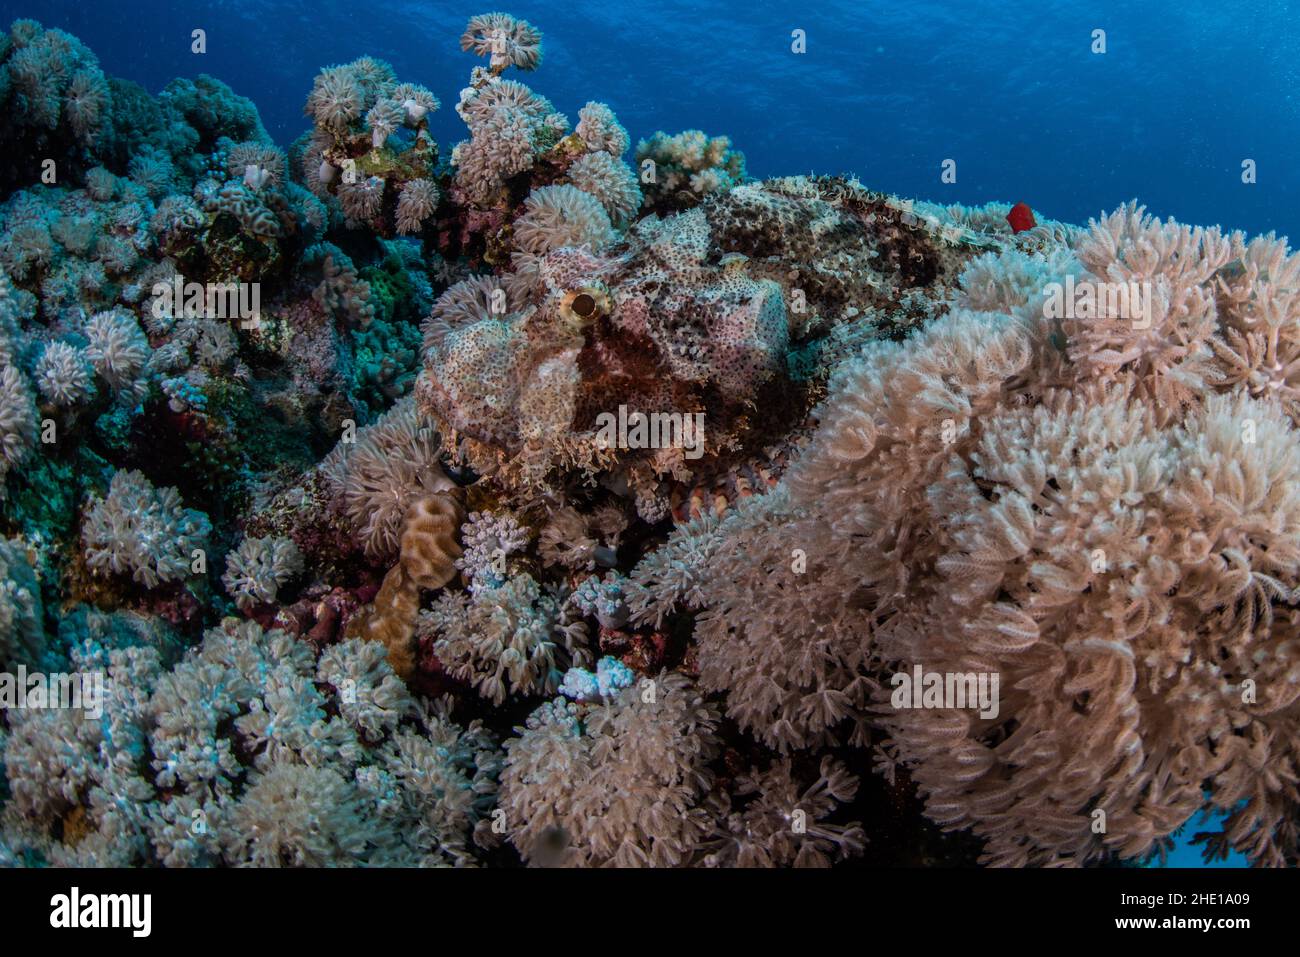 Ein verkohlter Skorpionfisch (Scorpaenopsis oxycephala) ist aufgrund seiner effektiven Tarnung fast unsichtbar inmitten der Korallen, auf die er sich legt. Stockfoto